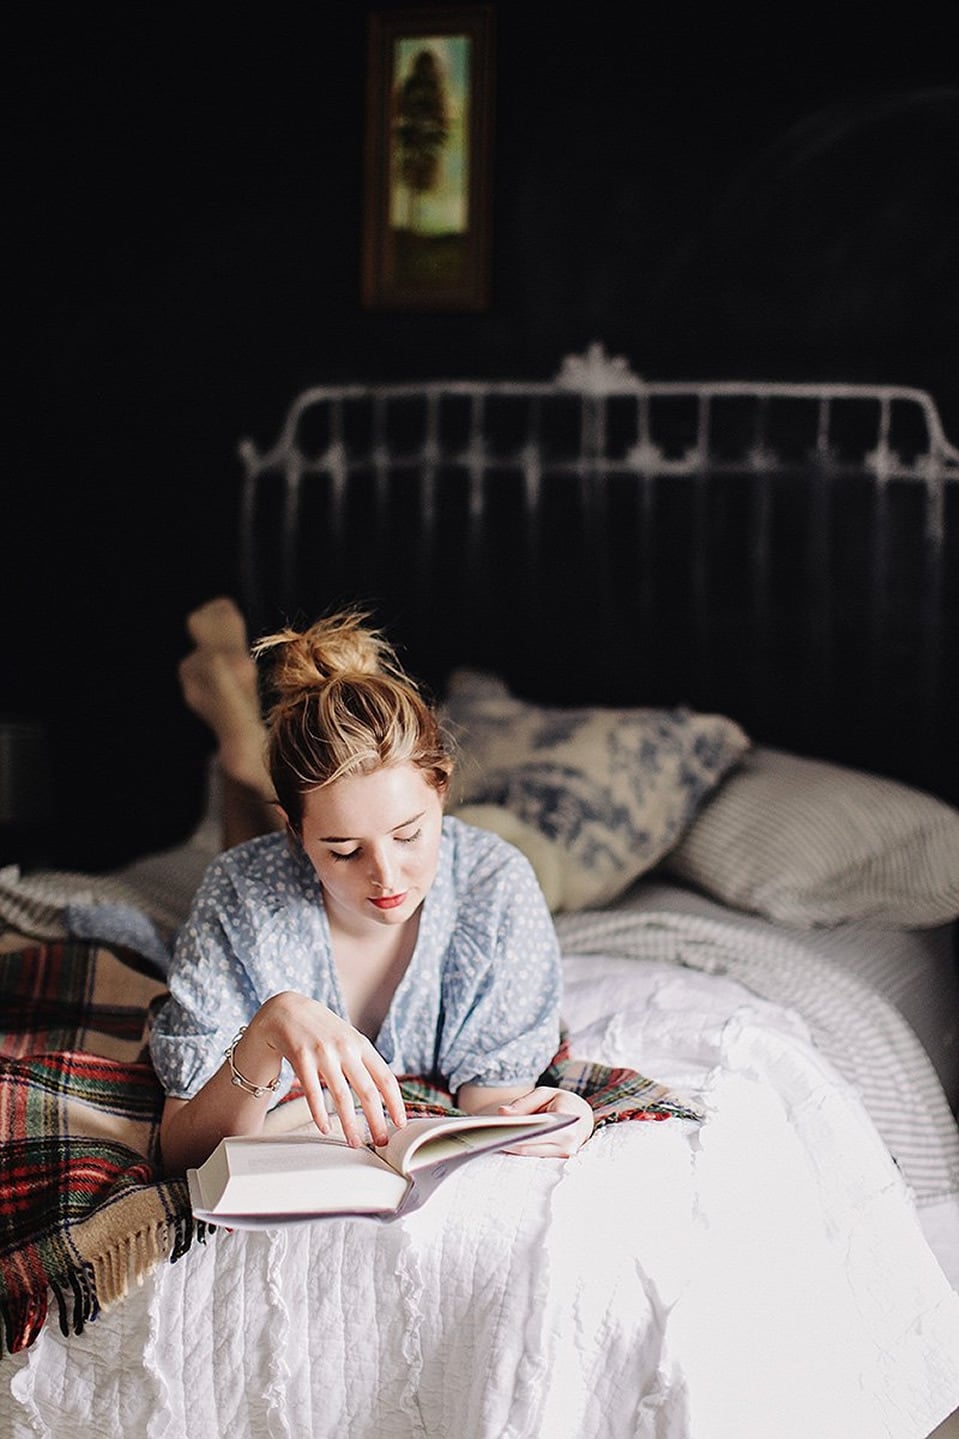 Garota lendo na cama, leitura, books, livros, livro garota, garota e livro